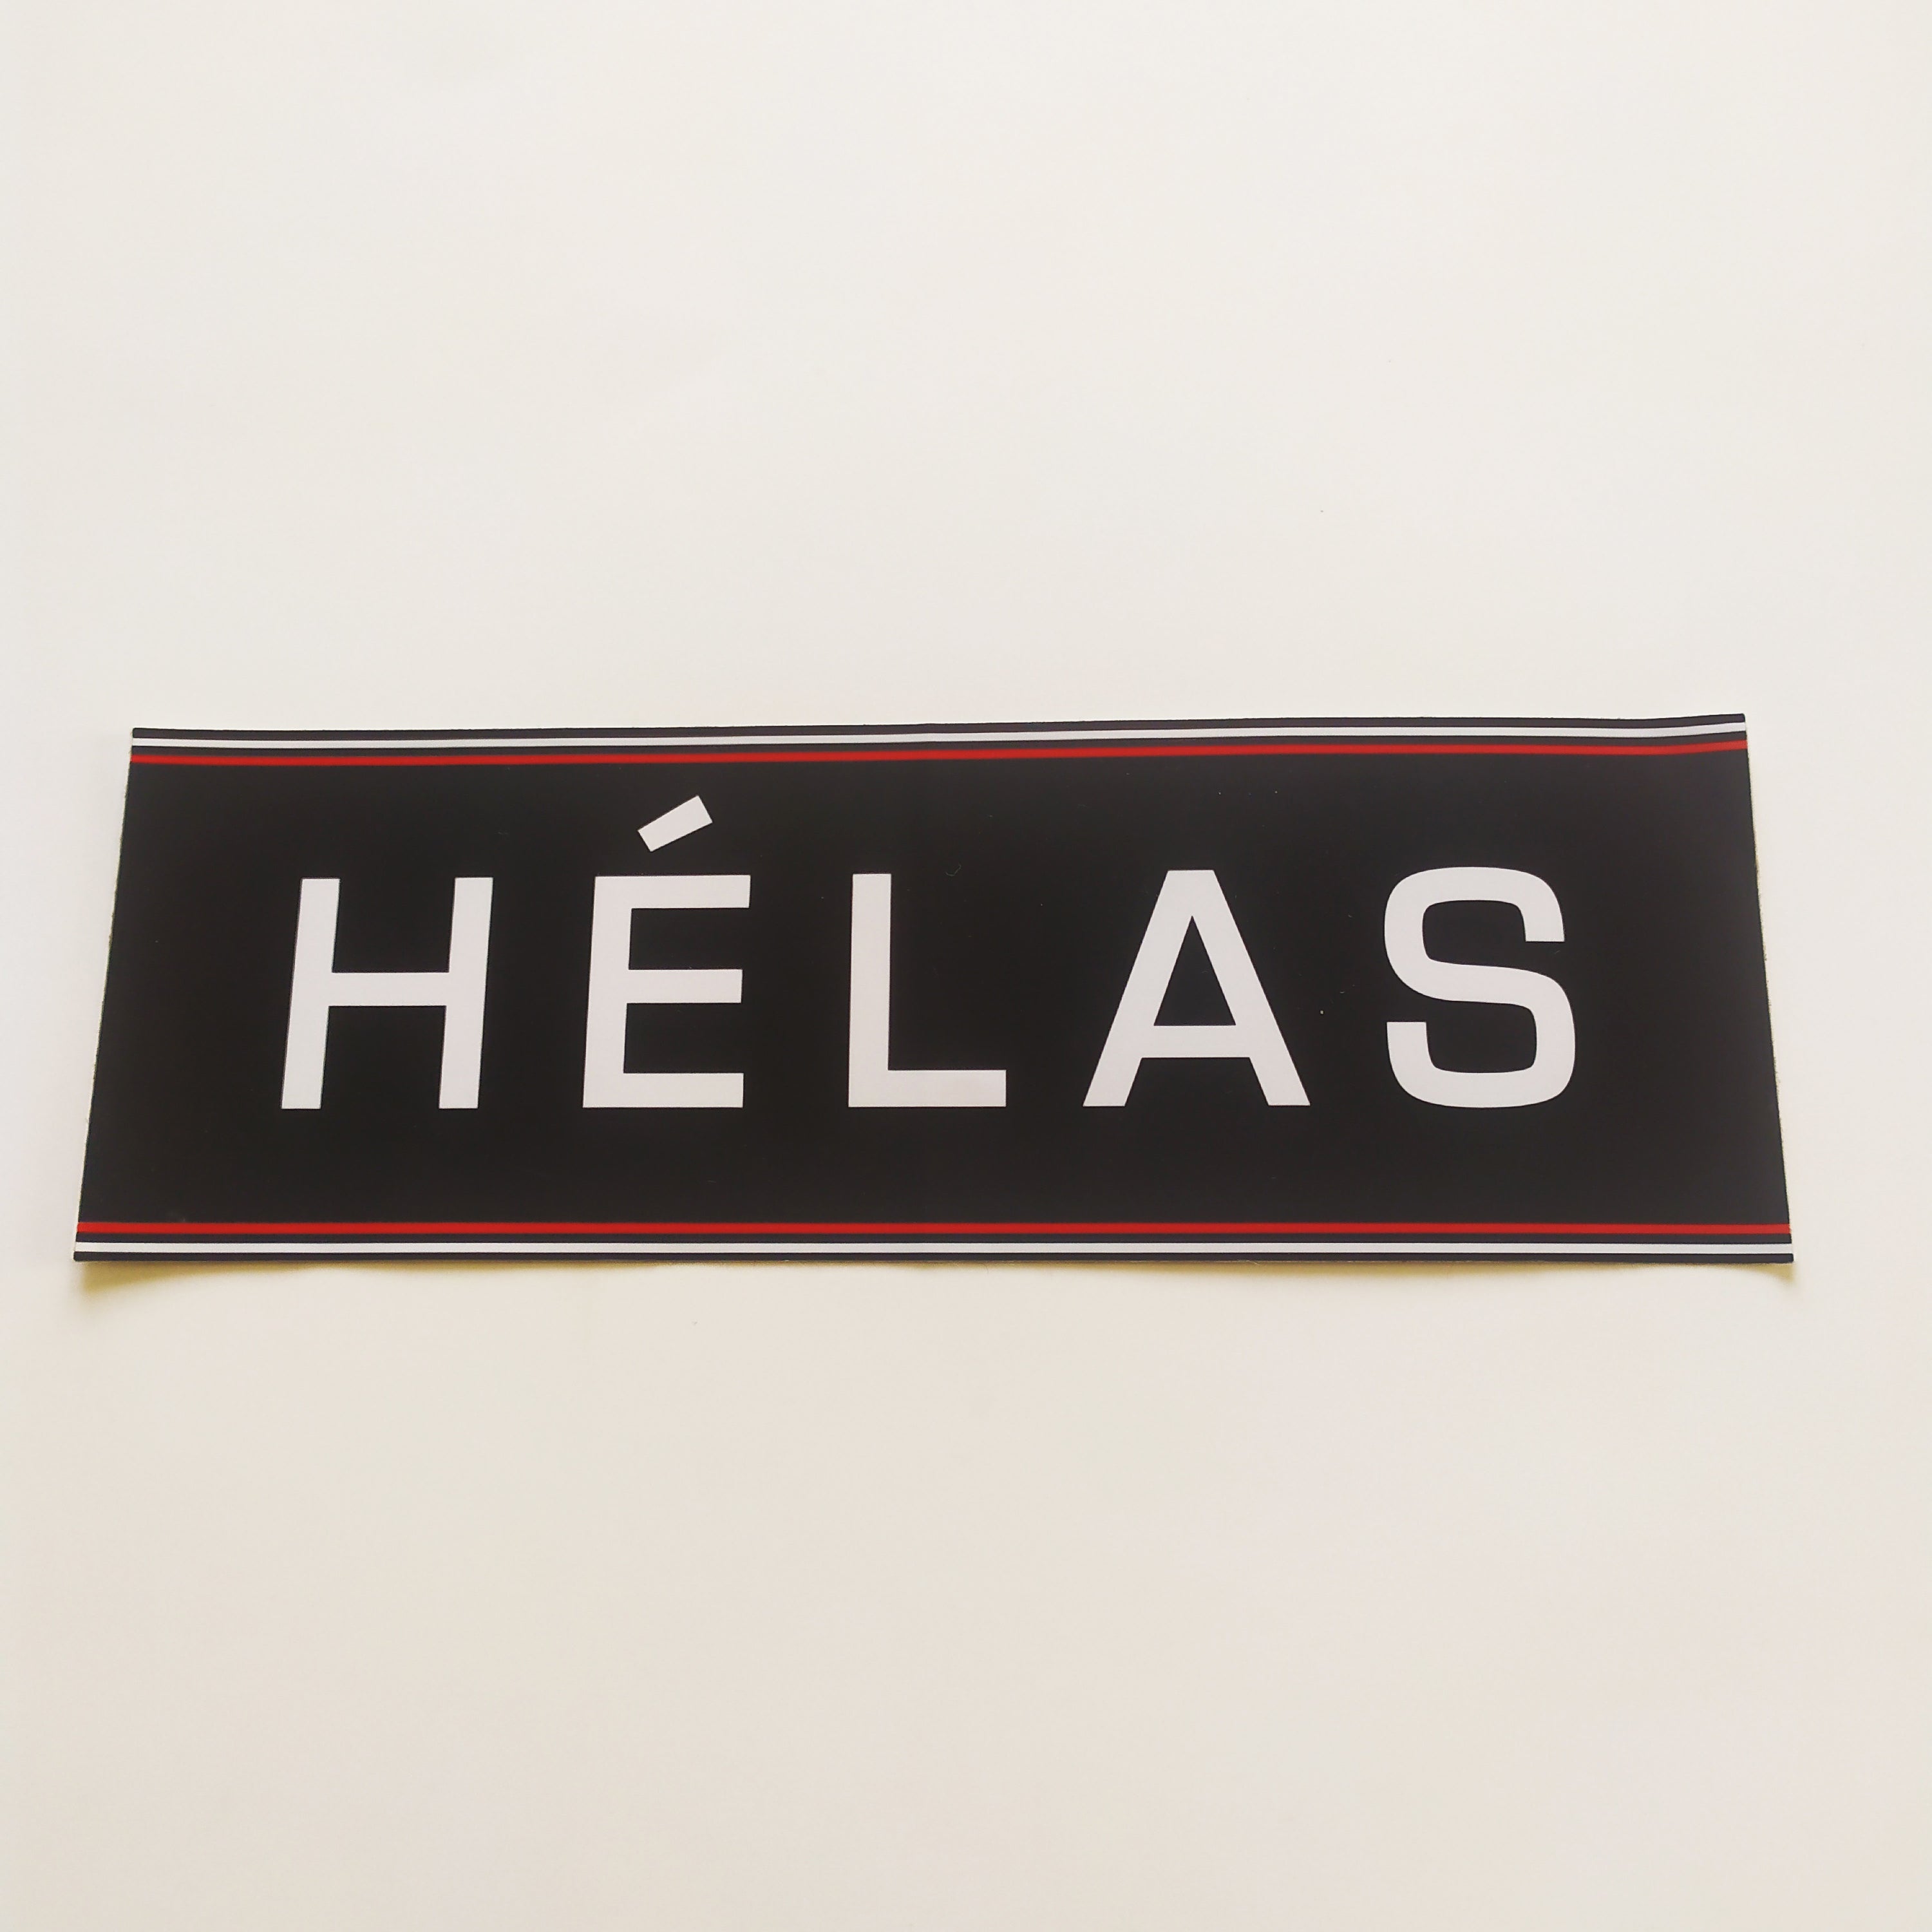 Helas Skateboard Sticker - 18cm across approx - SkateboardStickers.com